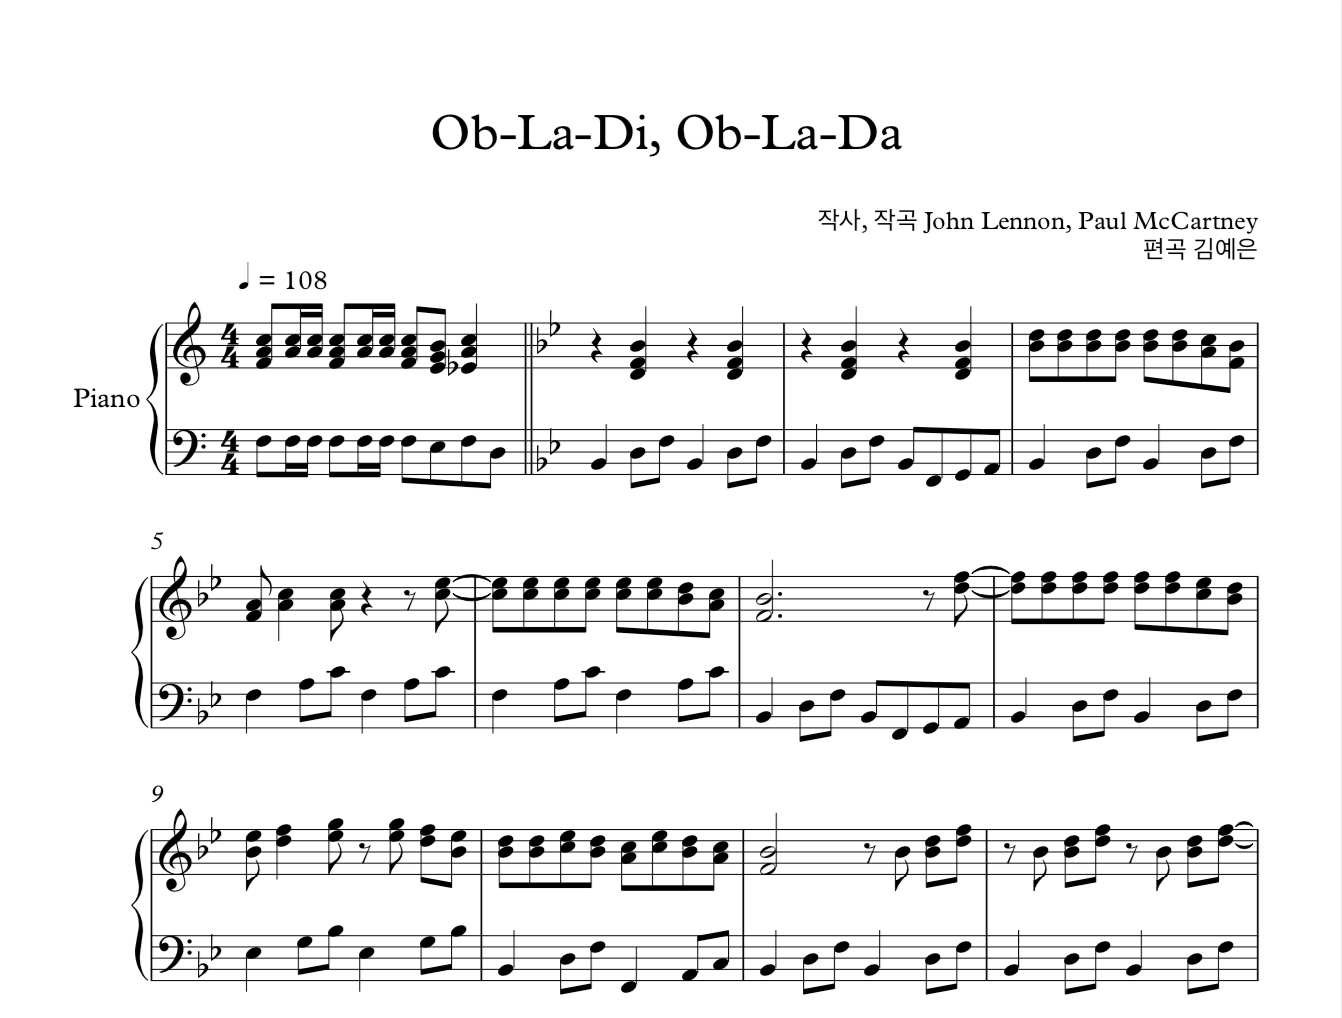 Ob-La-Di, Ob-La-Da 오블라디 오블라다 비틀즈 피아노 솔로 악보